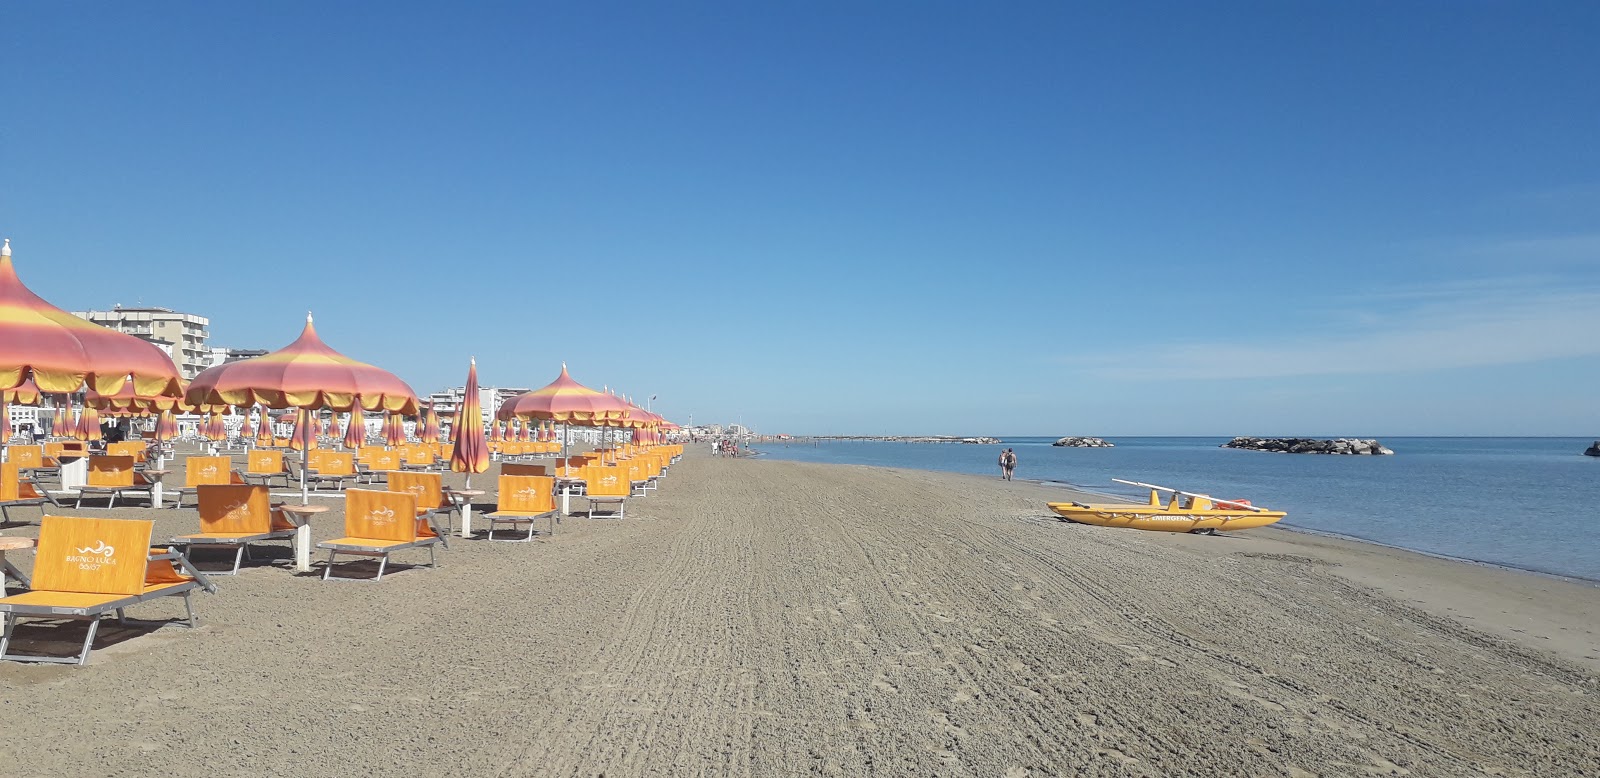 Foto de Torre pedrera beach con brillante arena fina superficie